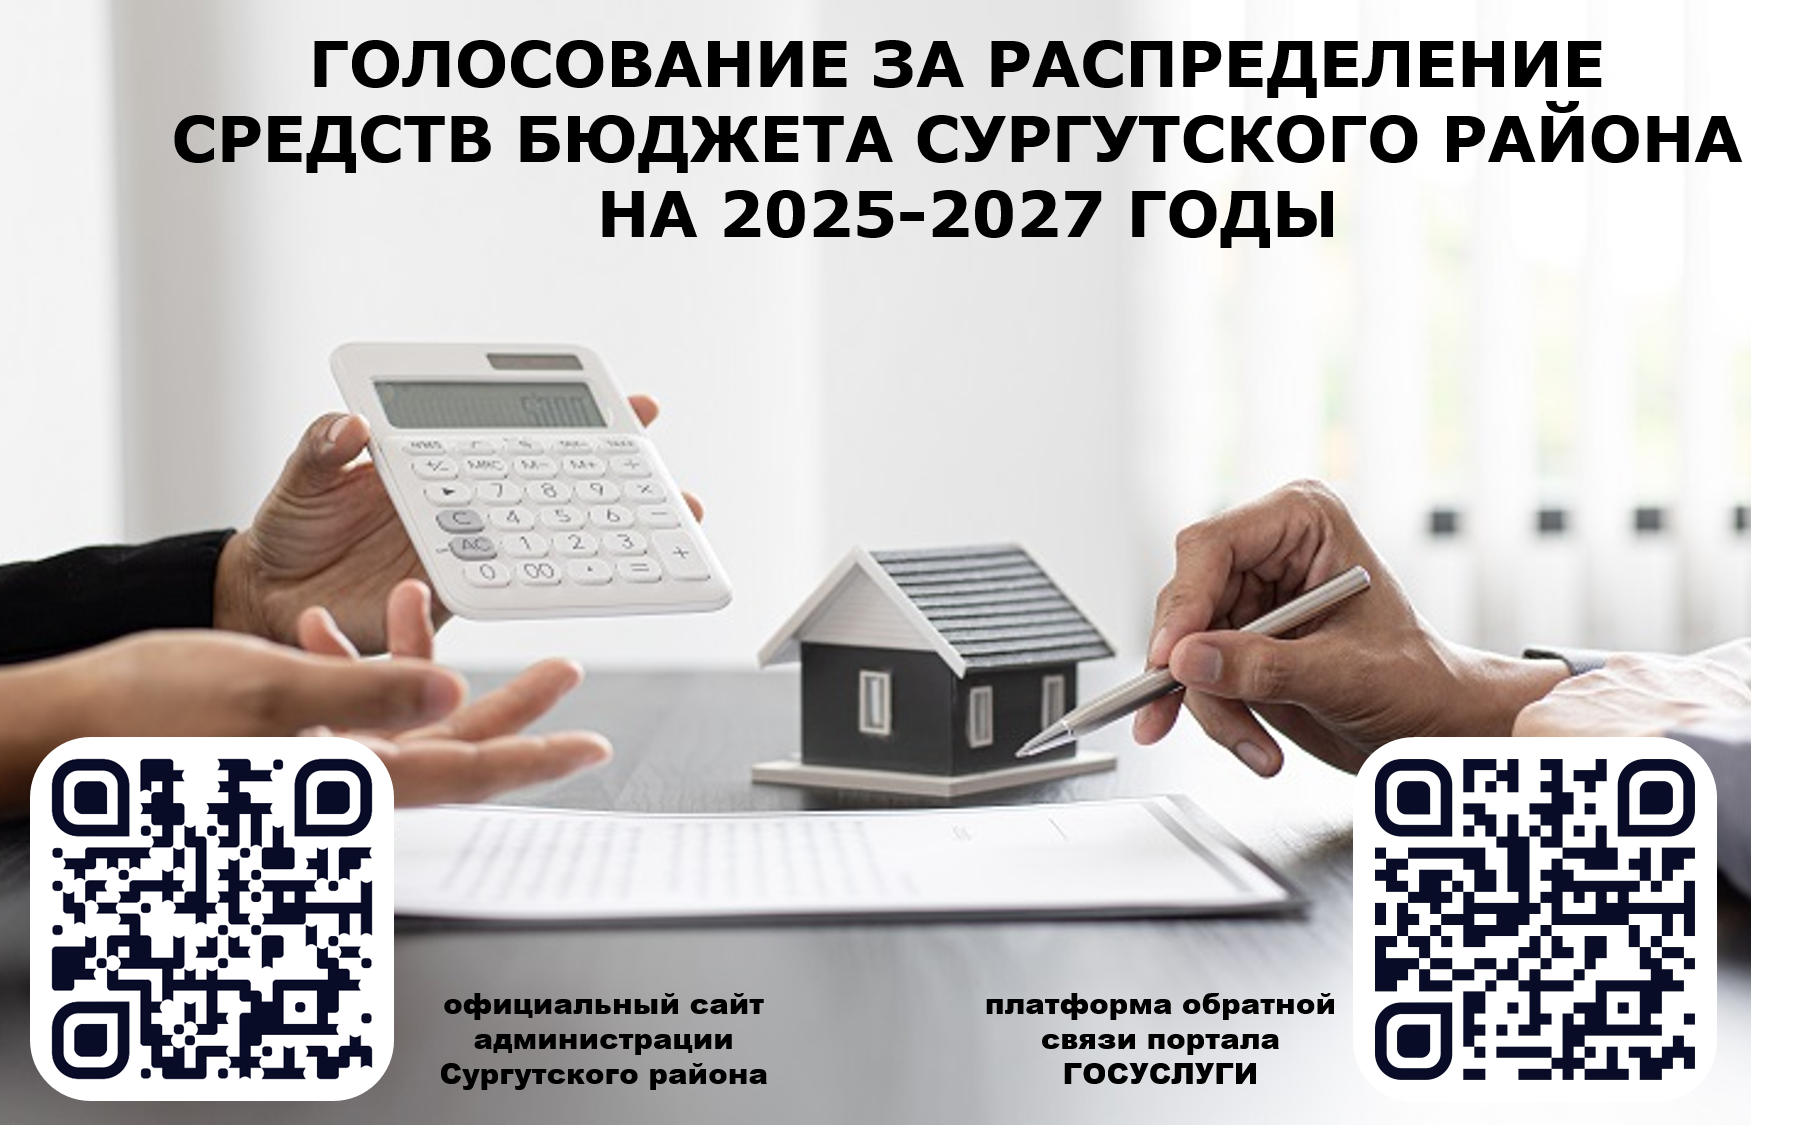 Голосование за распределение средств бюджета Сургутского района на 2025-2027